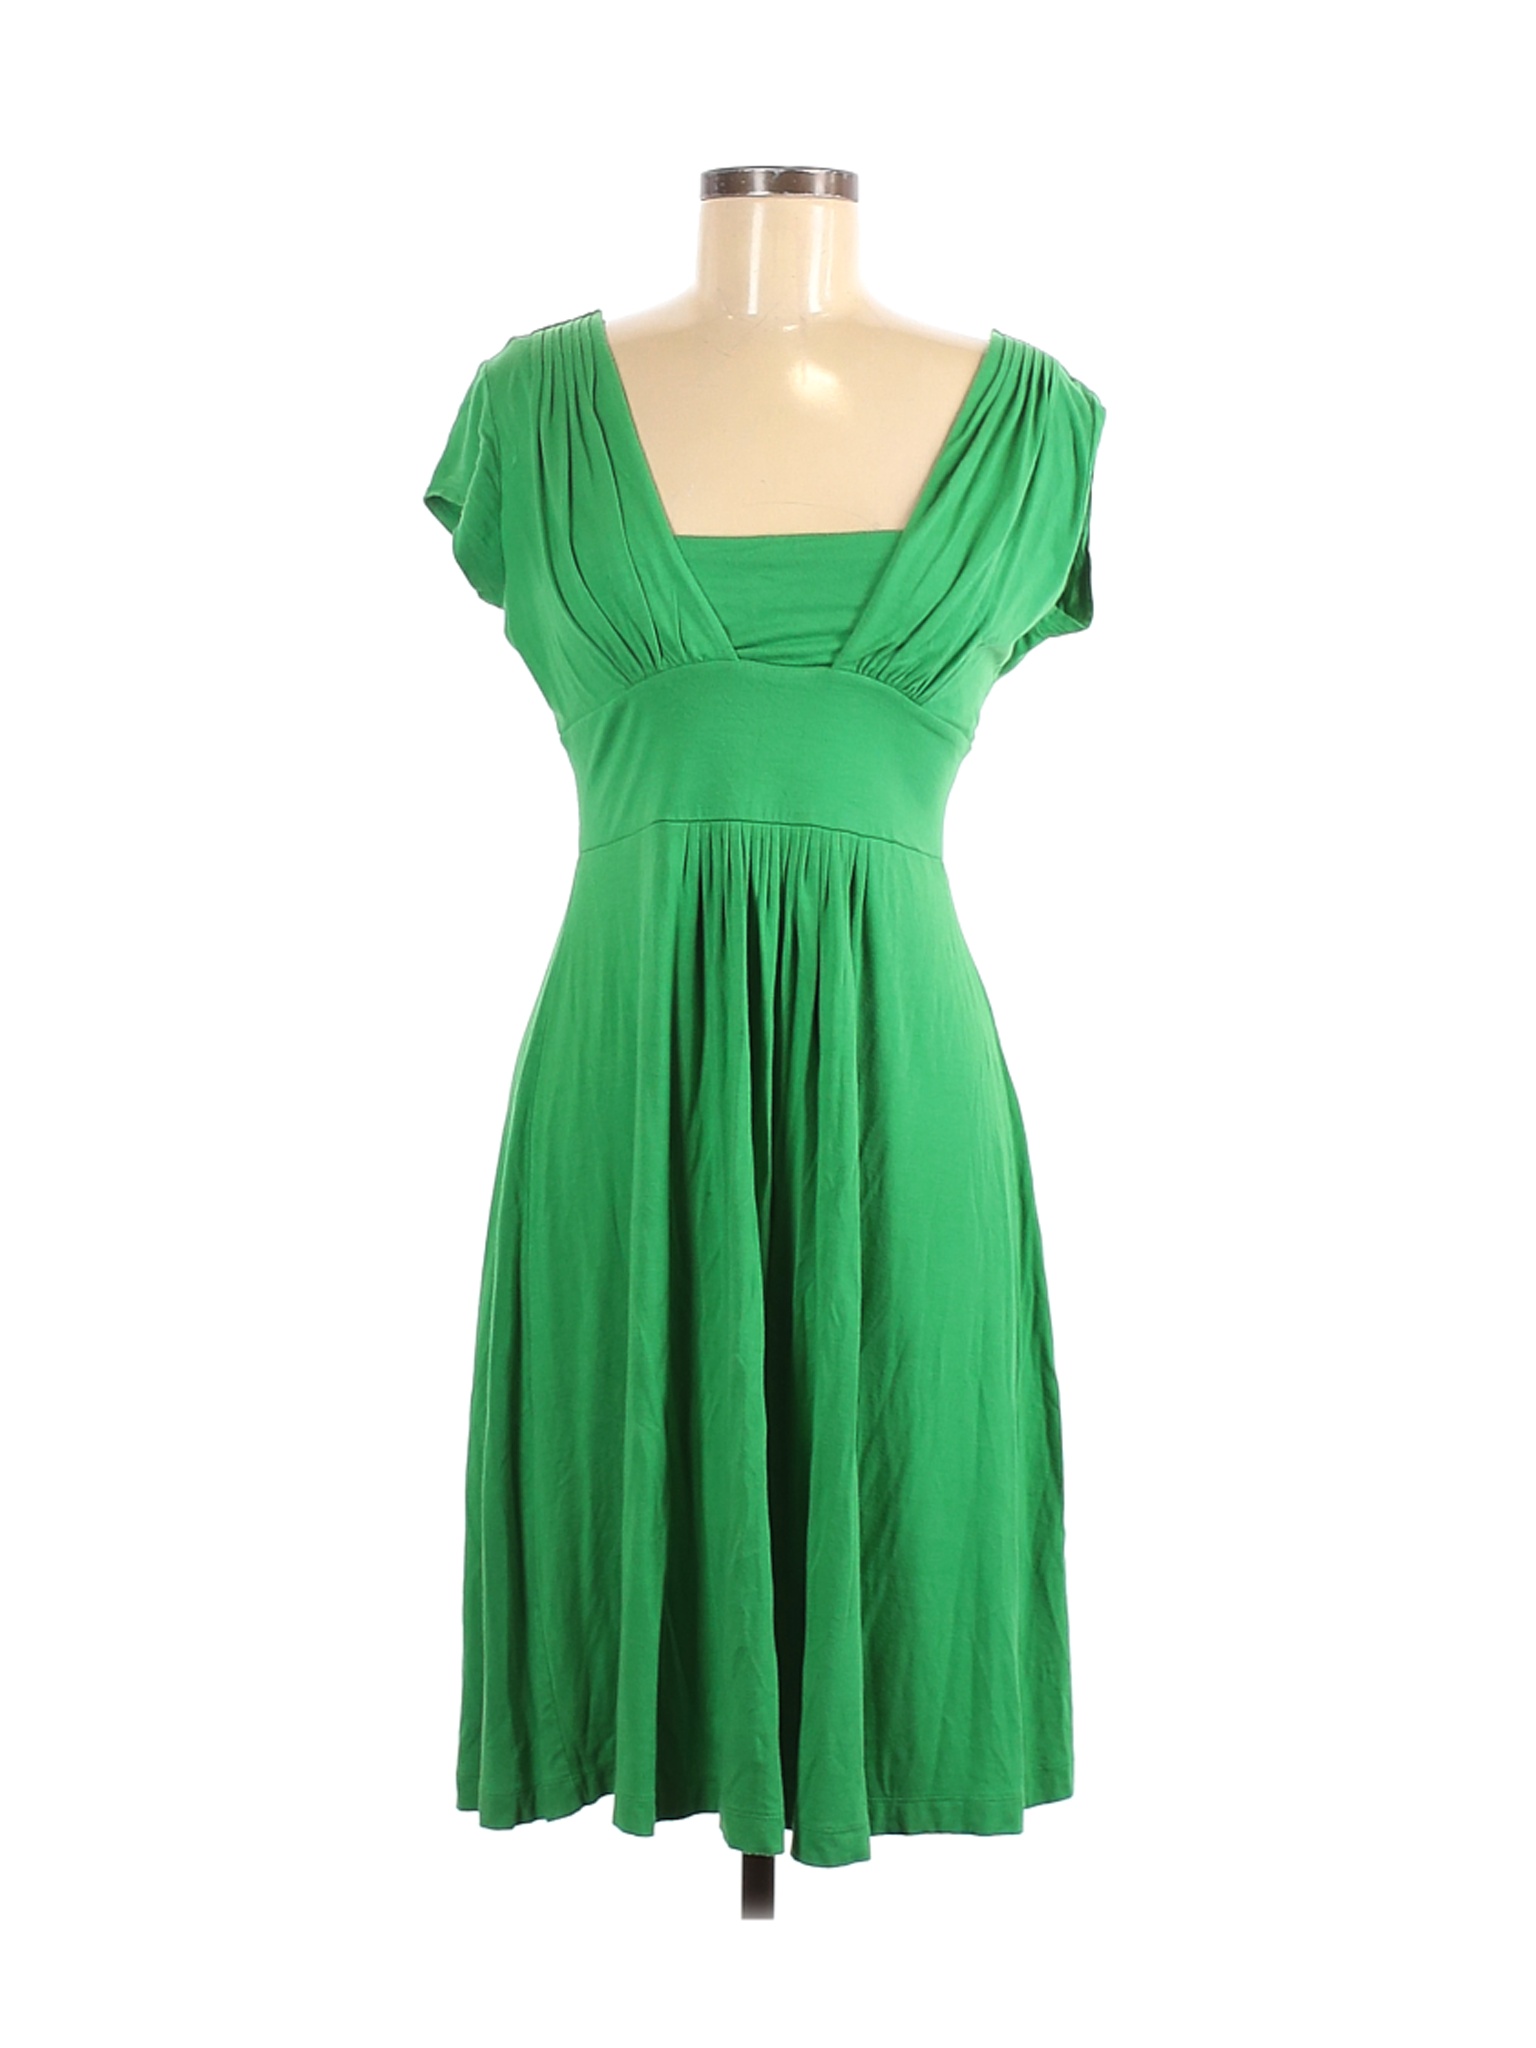 Banana Republic Women Green Casual Dress M | eBay